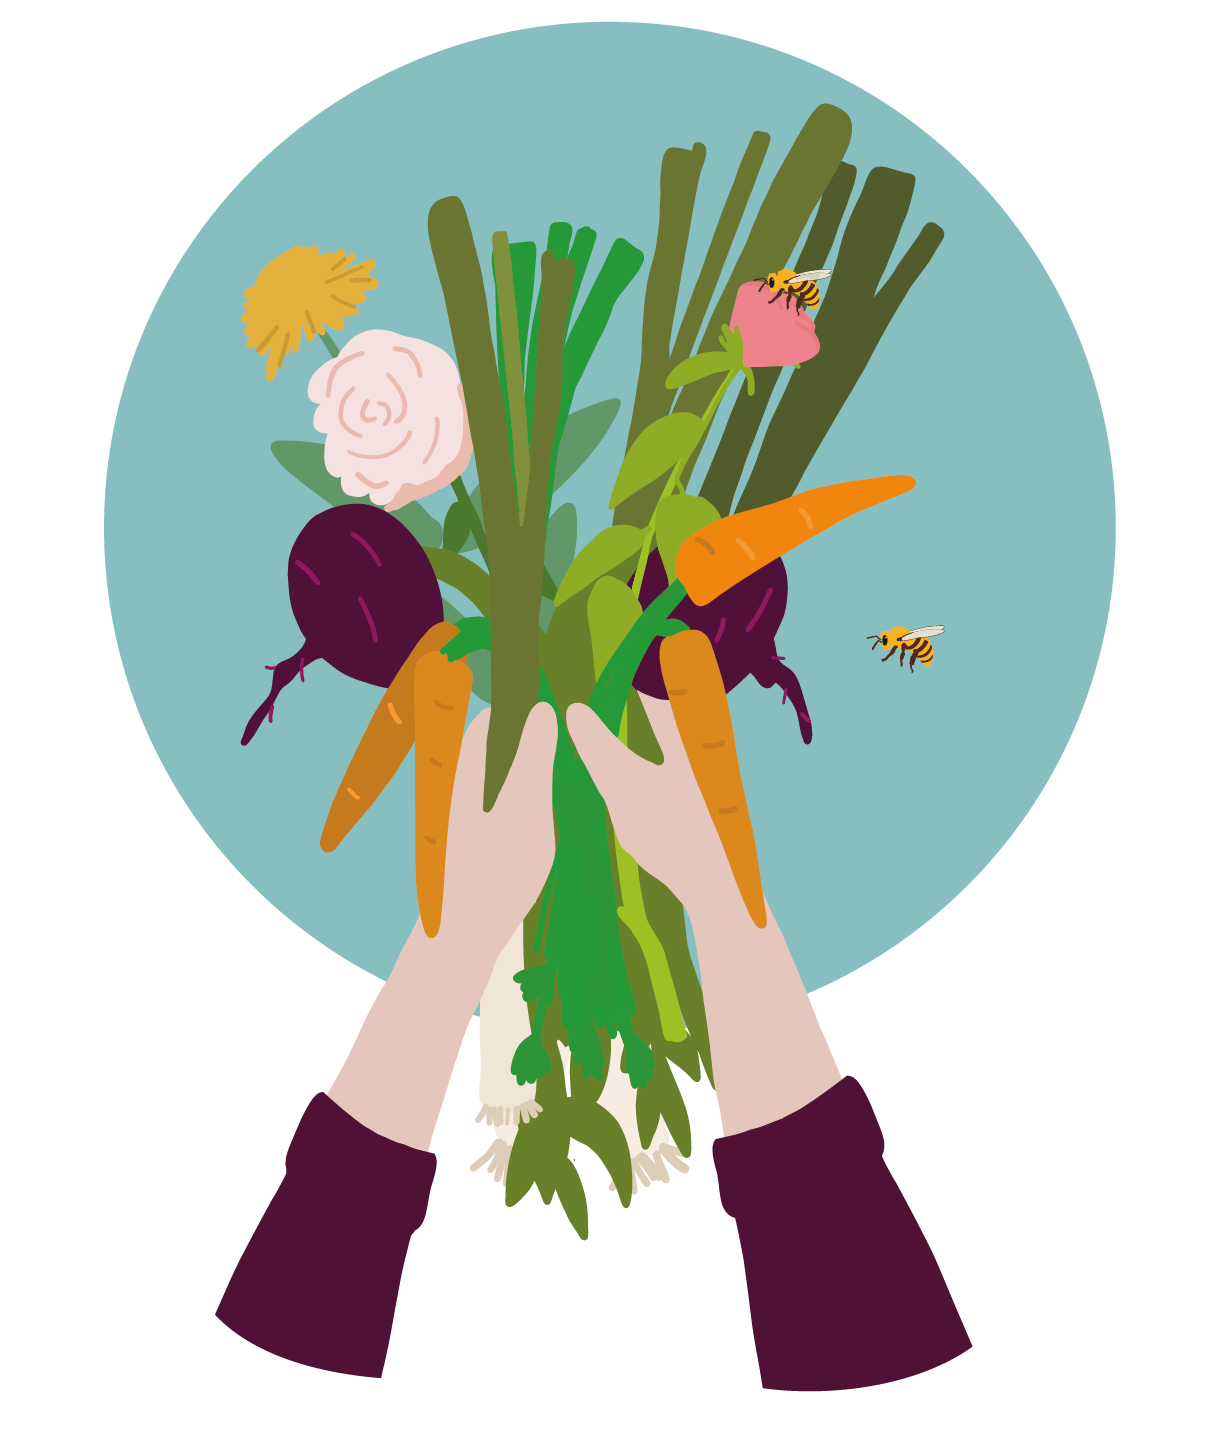 Dessin de deux mains tenant plusieurs légumes différents : poireau, betterave, carotte, etc. avec une abeille à côté